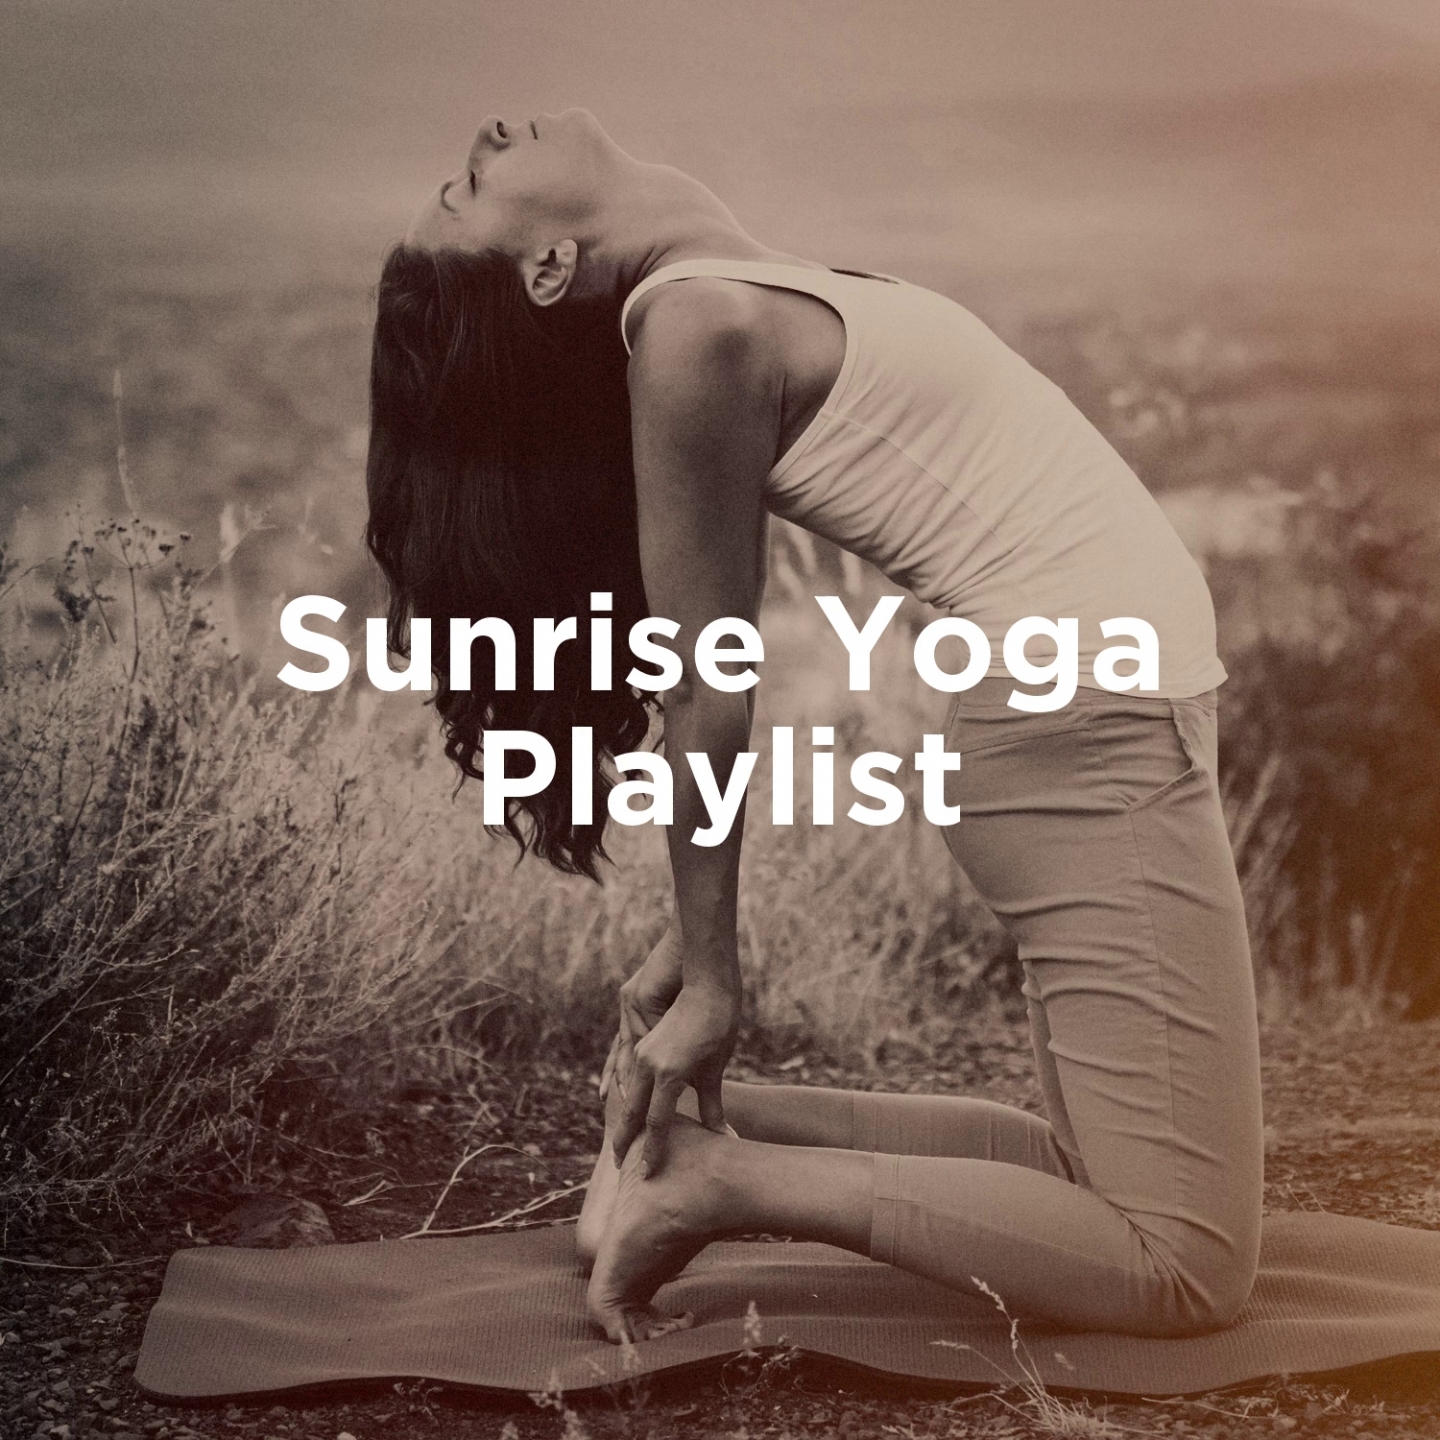 Sunrise yoga playlist